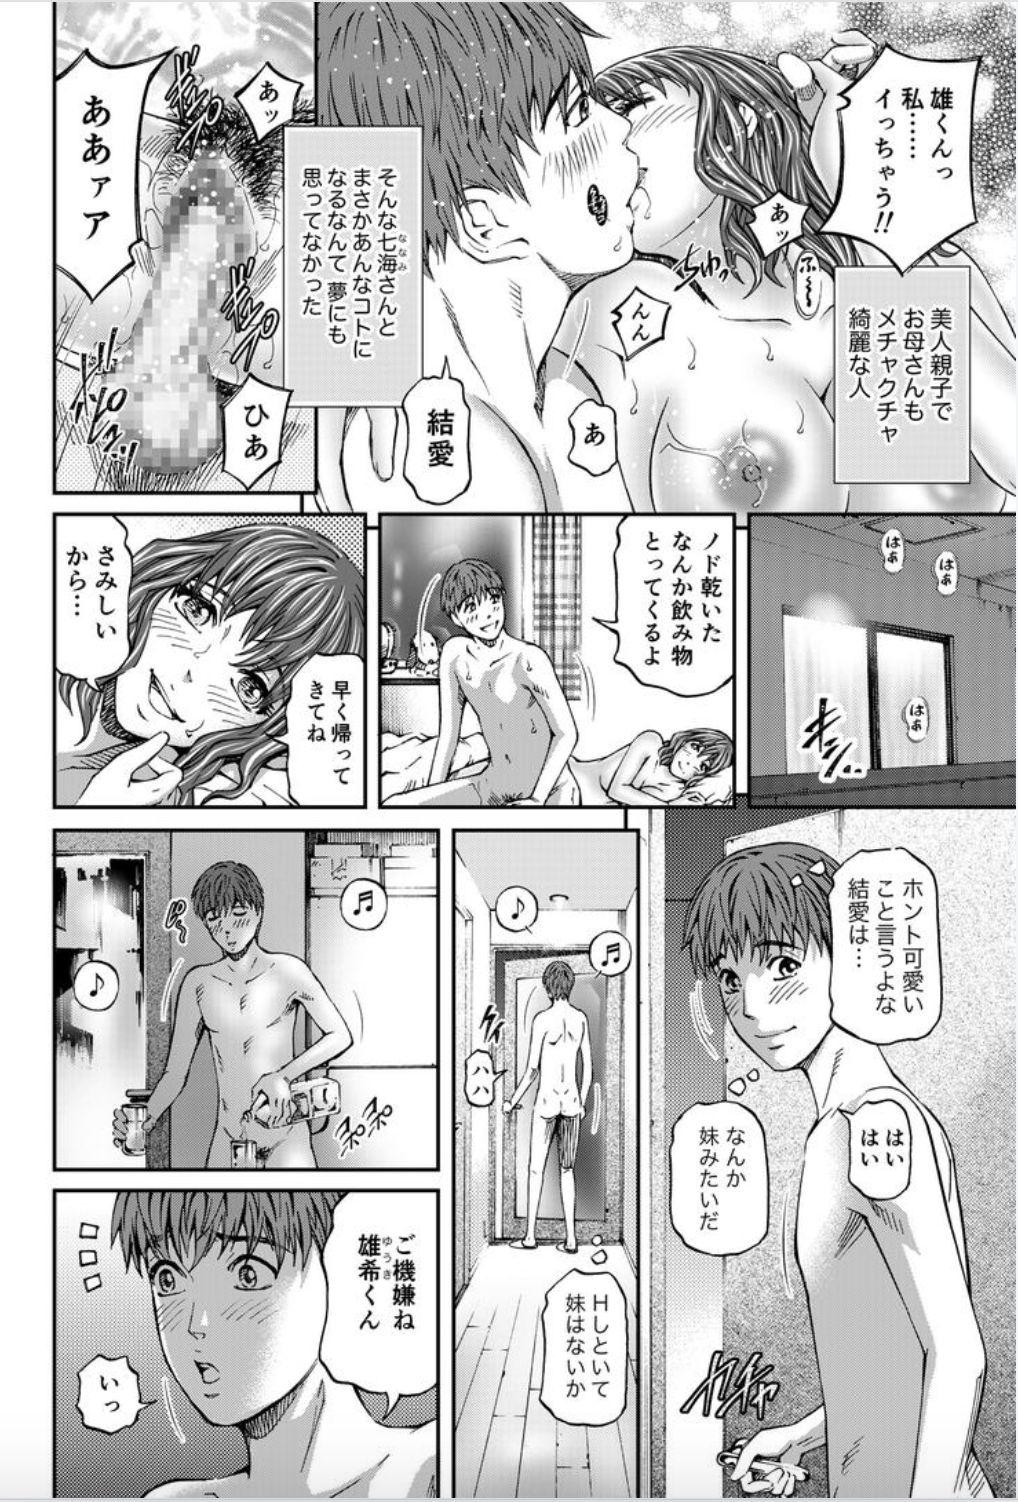 Mujer Onna-tachi ga Iku Toki... Ero Drama Vol. 8 Datte, Kanojo no Haha ga... Bunduda - Page 4